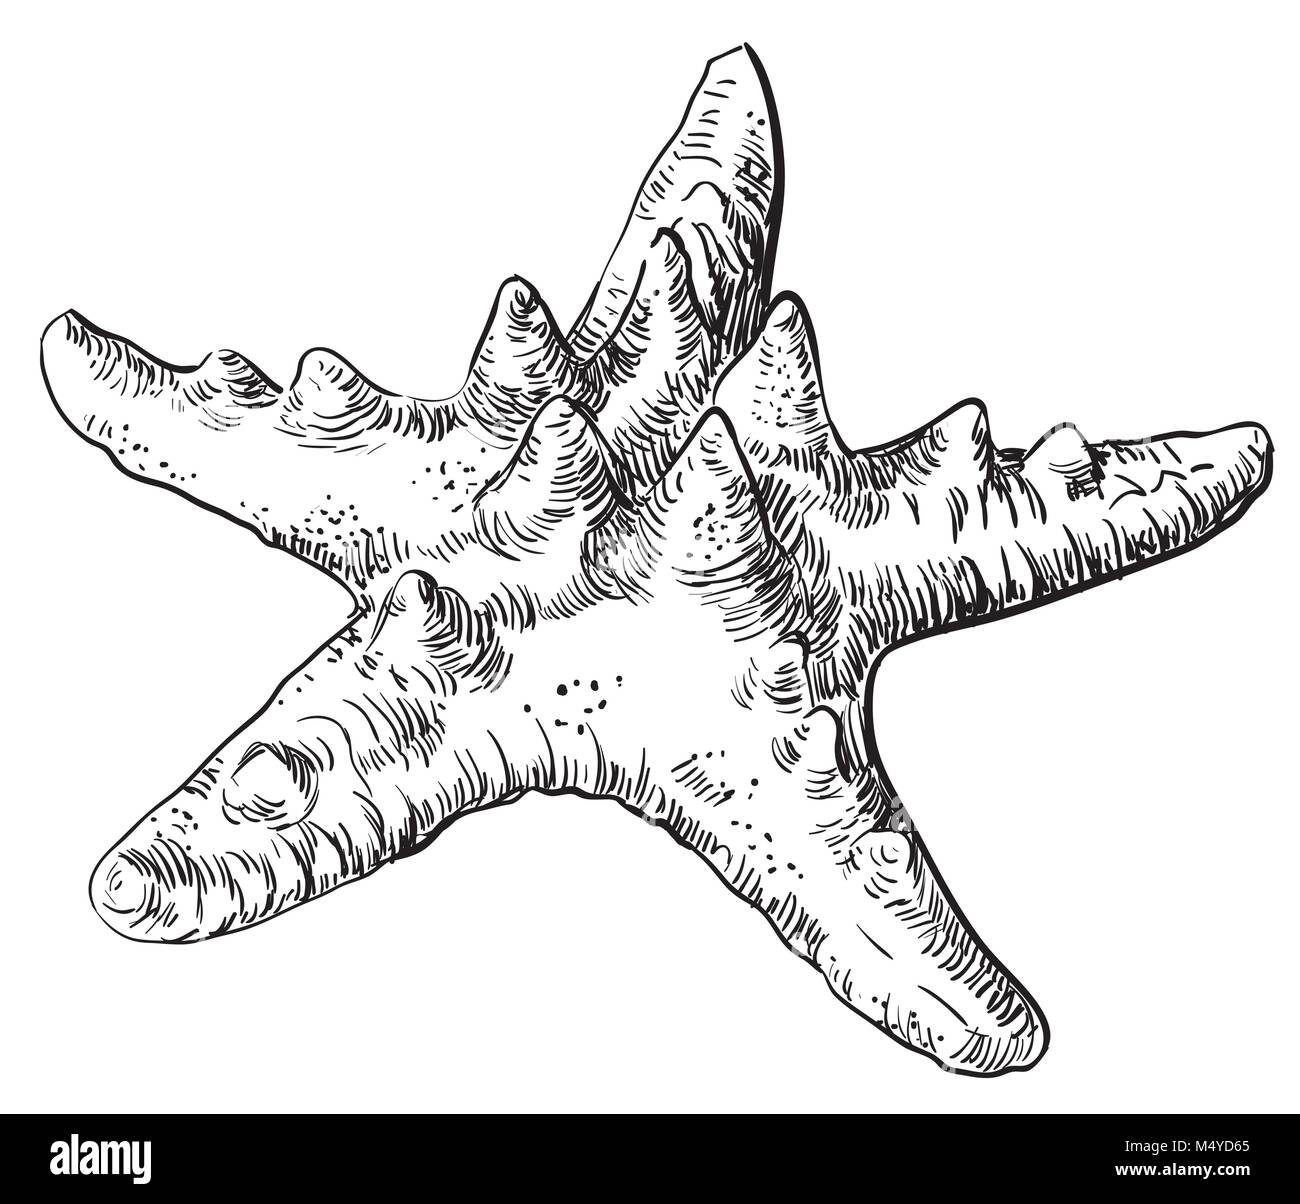 Disegno a mano delle stelle marine. Vettore illustrazione monocromatica di stelle marine in colore nero isolato su sfondo bianco Illustrazione Vettoriale